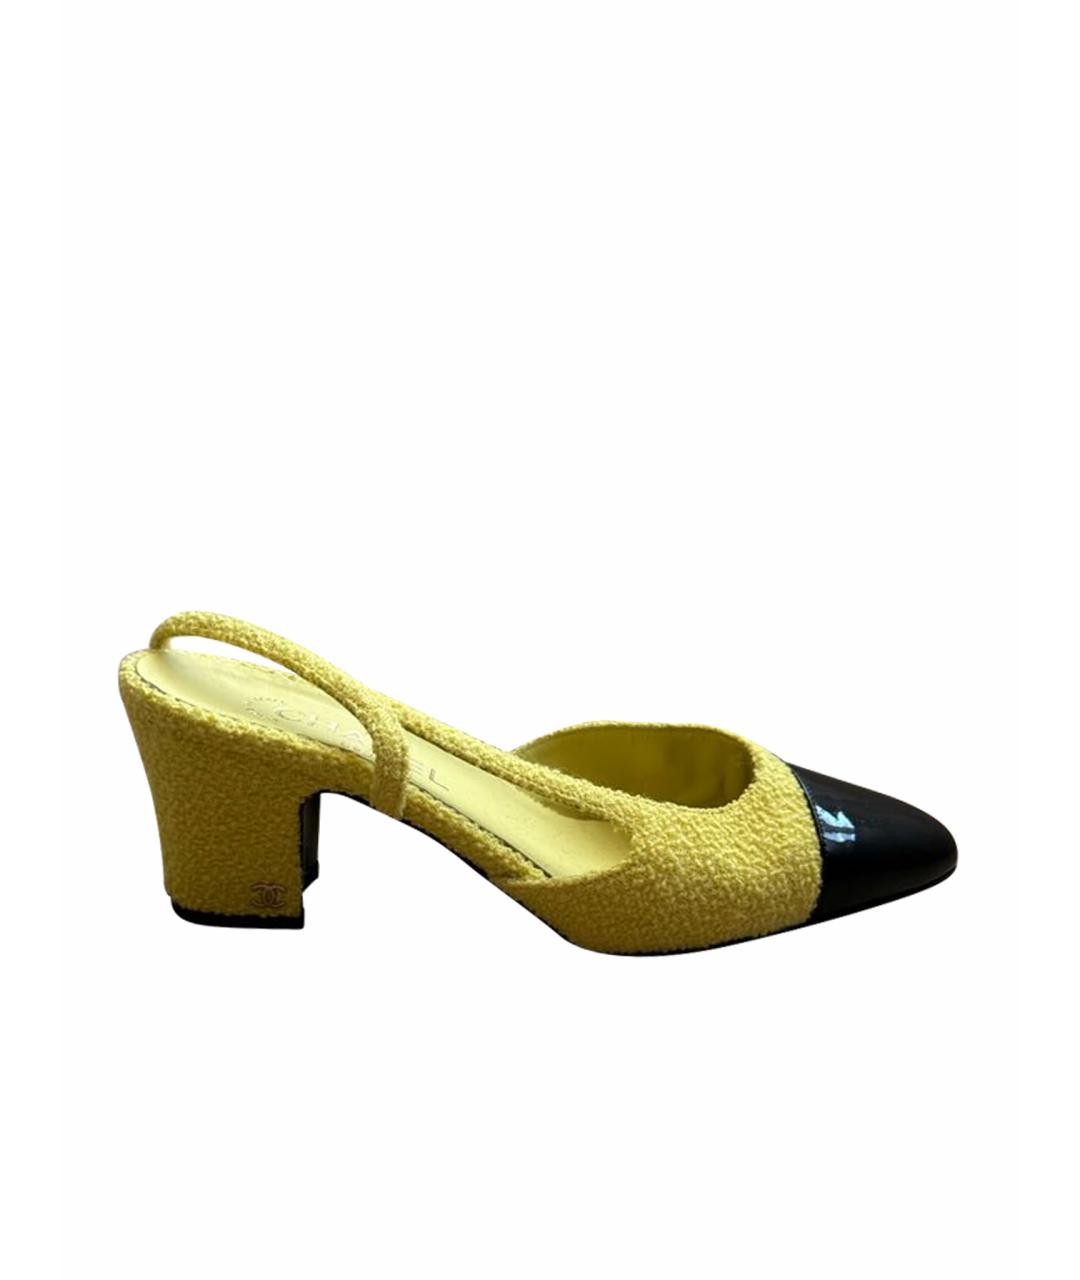 CHANEL PRE-OWNED Желтые кожаные лодочки на низком каблуке, фото 1